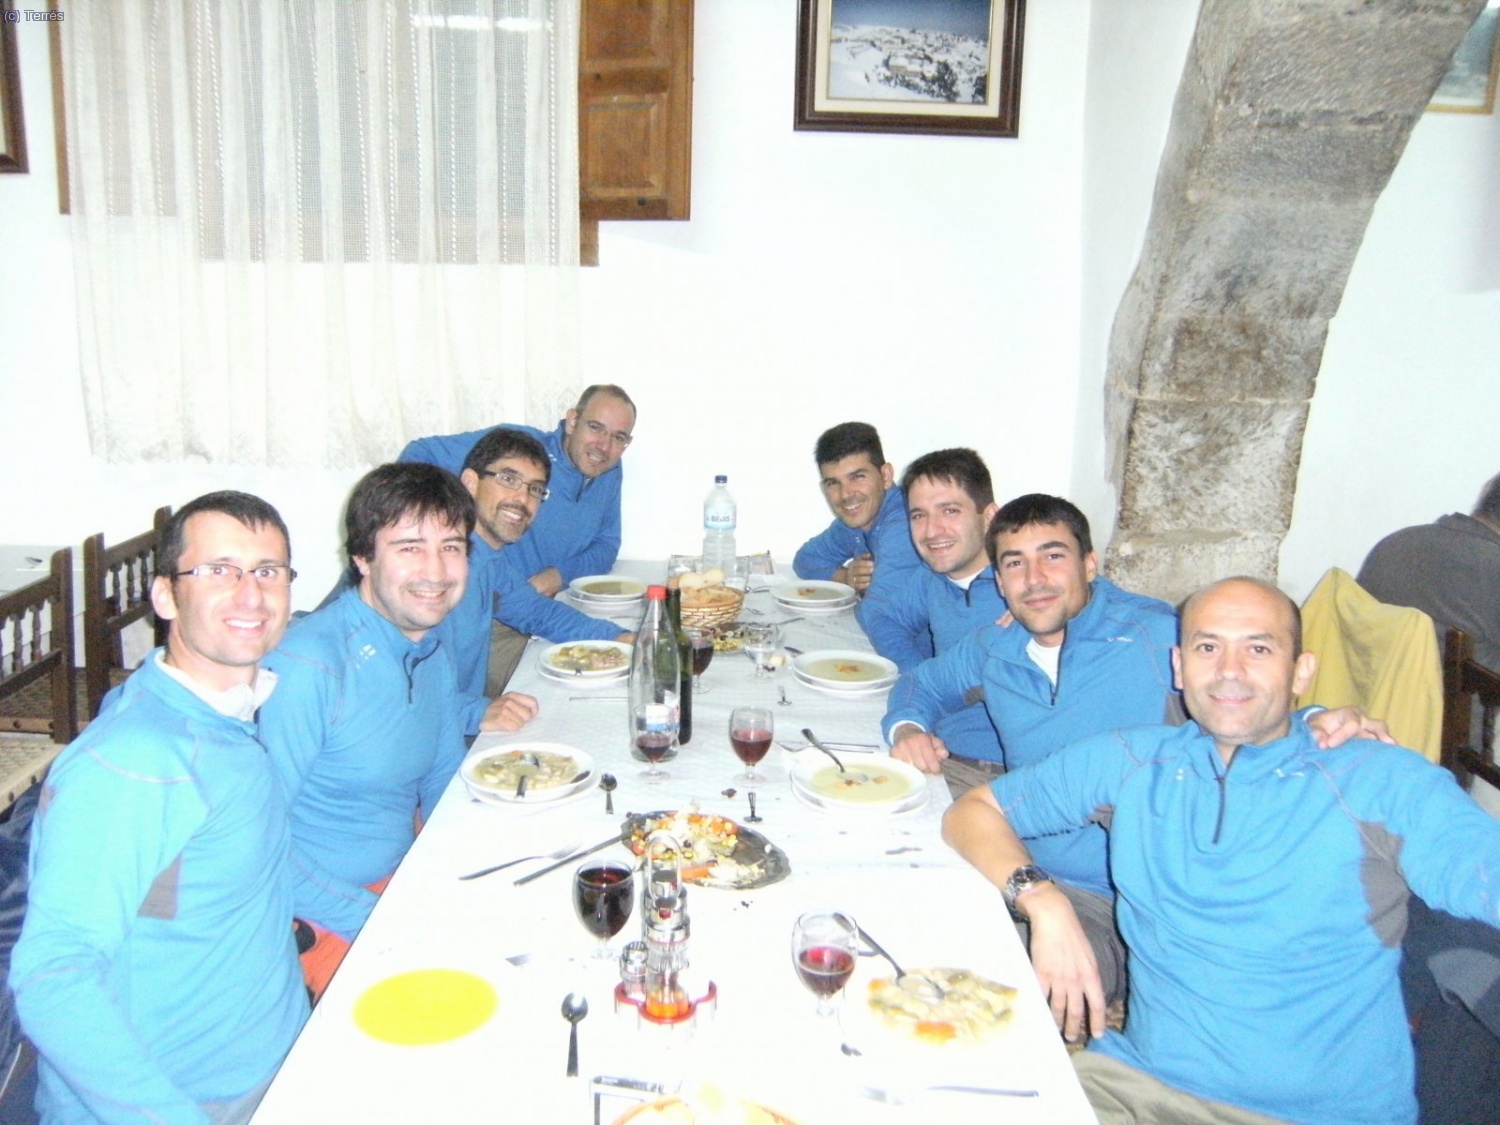 Sant Joan del Penyagolosa. Cena en el restaurante para celebrar la actividad realizada.